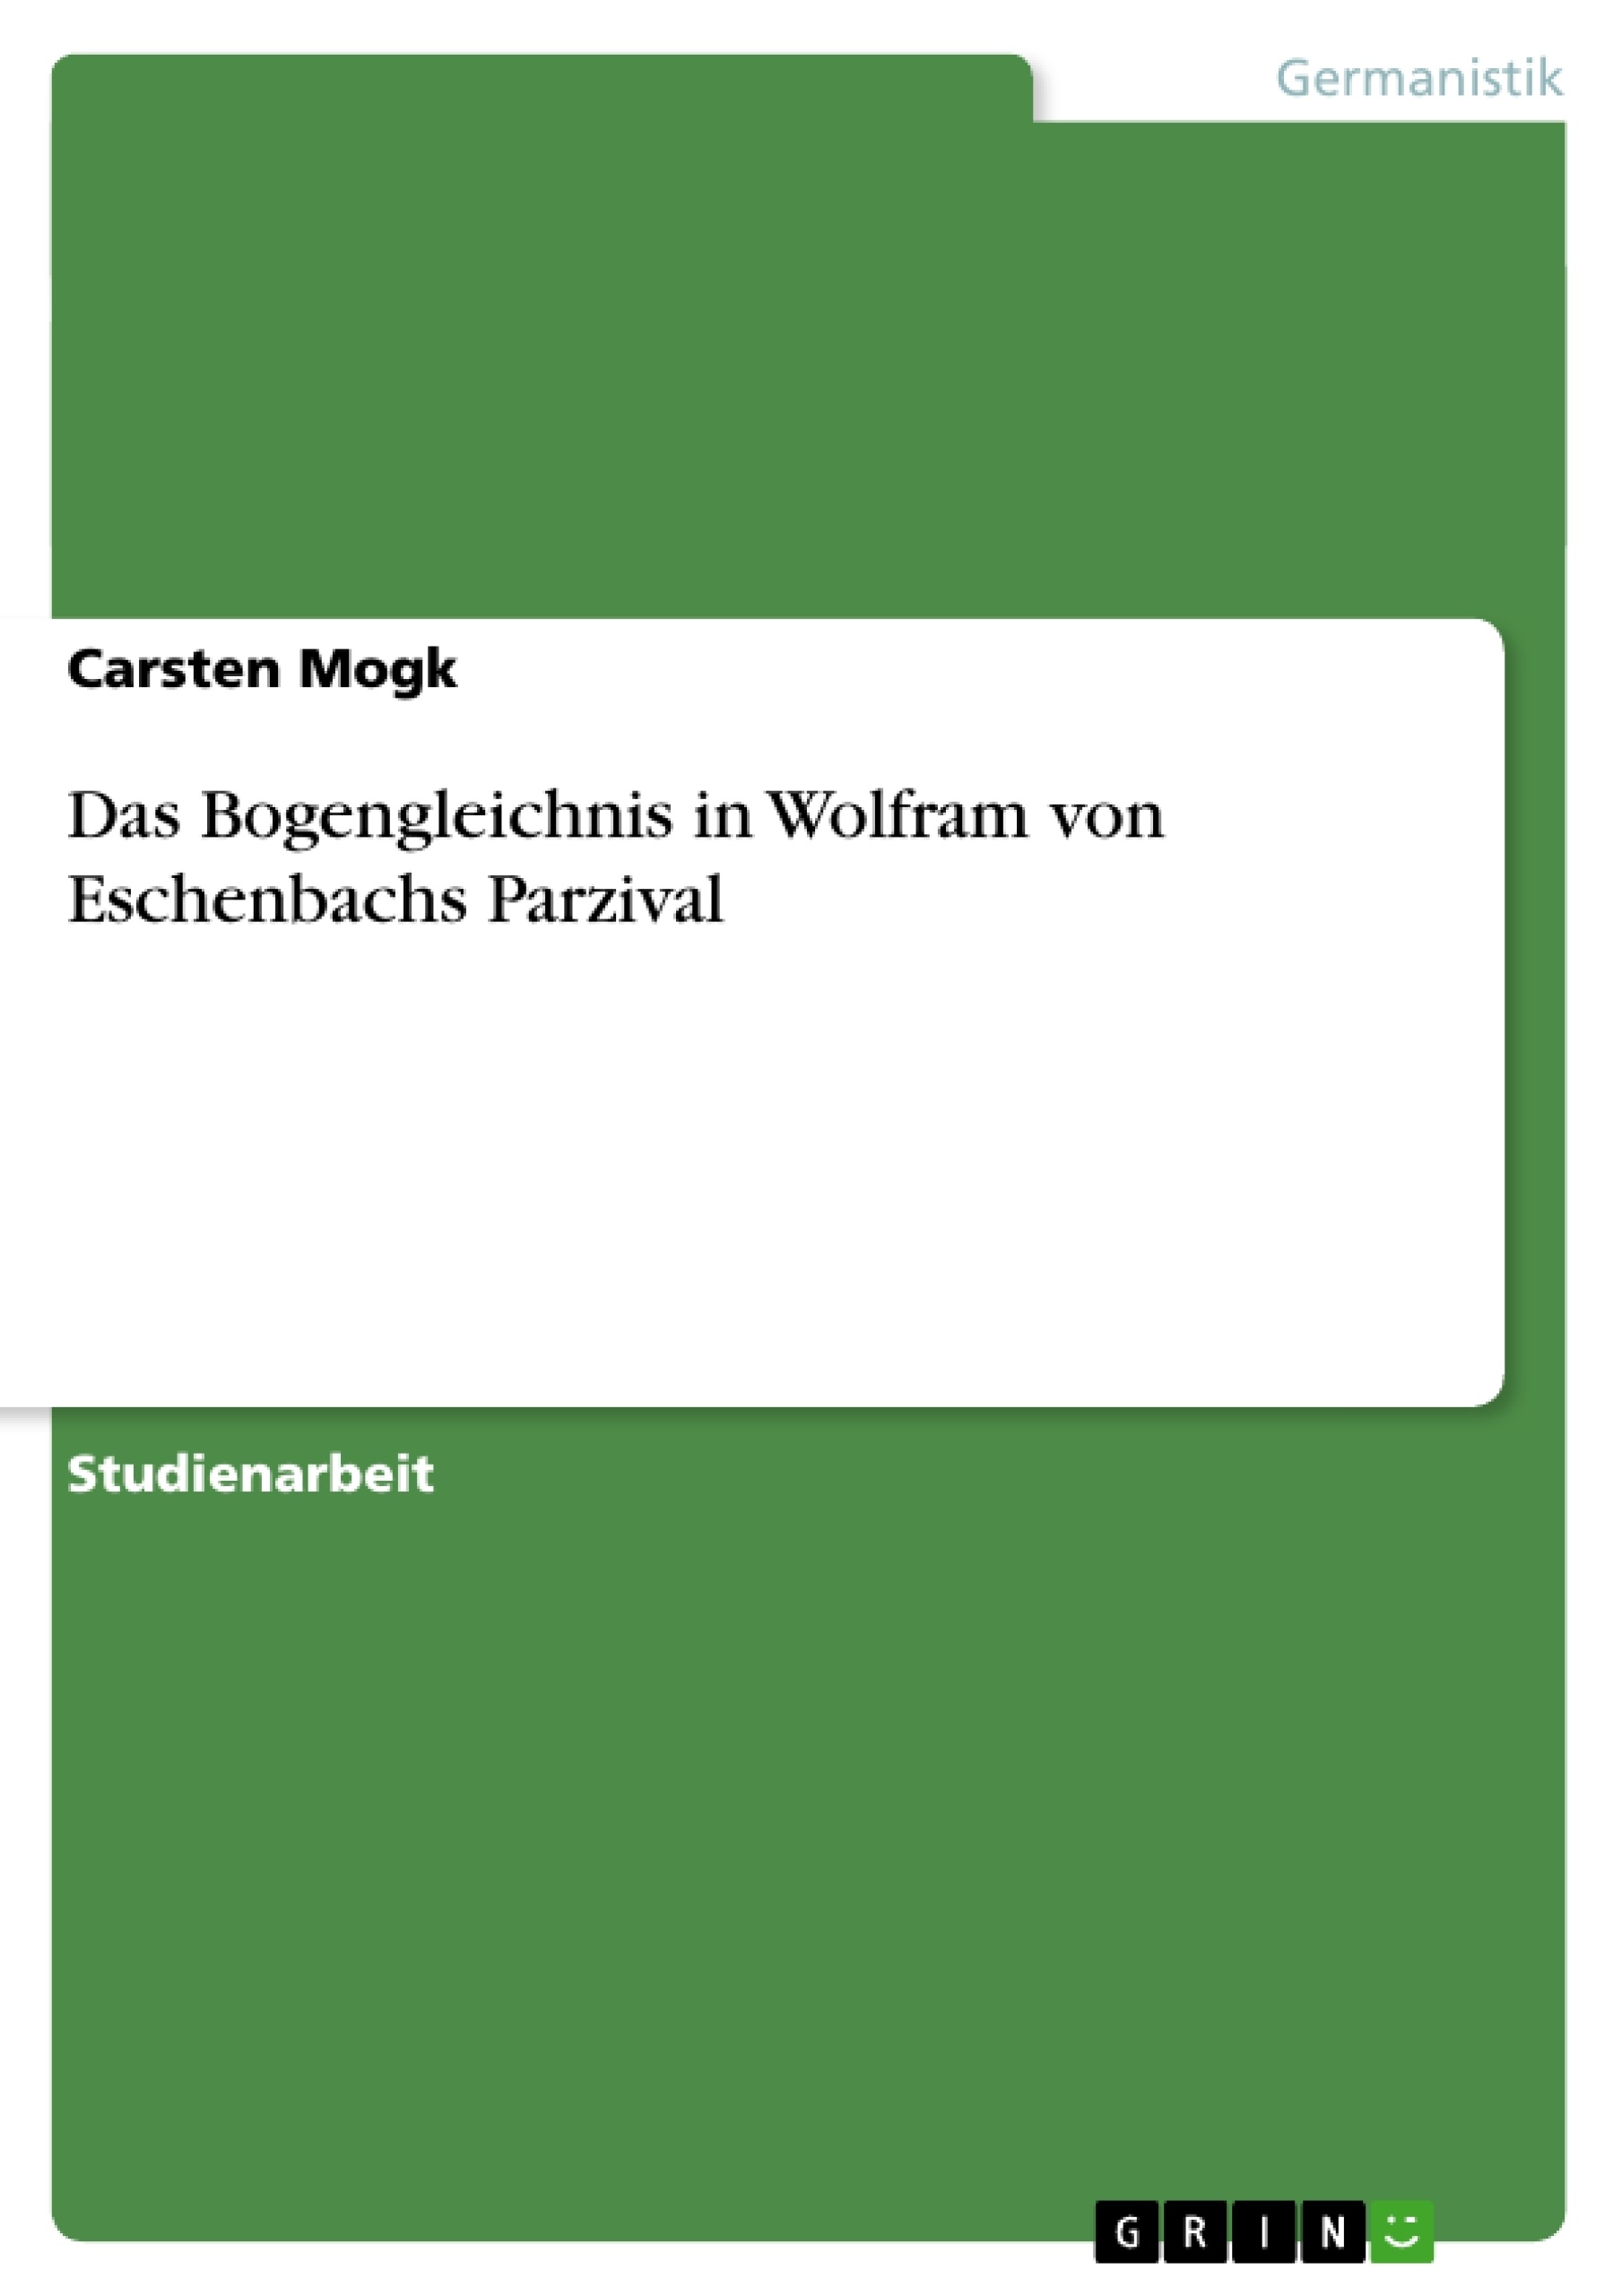 Title: Das Bogengleichnis in Wolfram von Eschenbachs Parzival